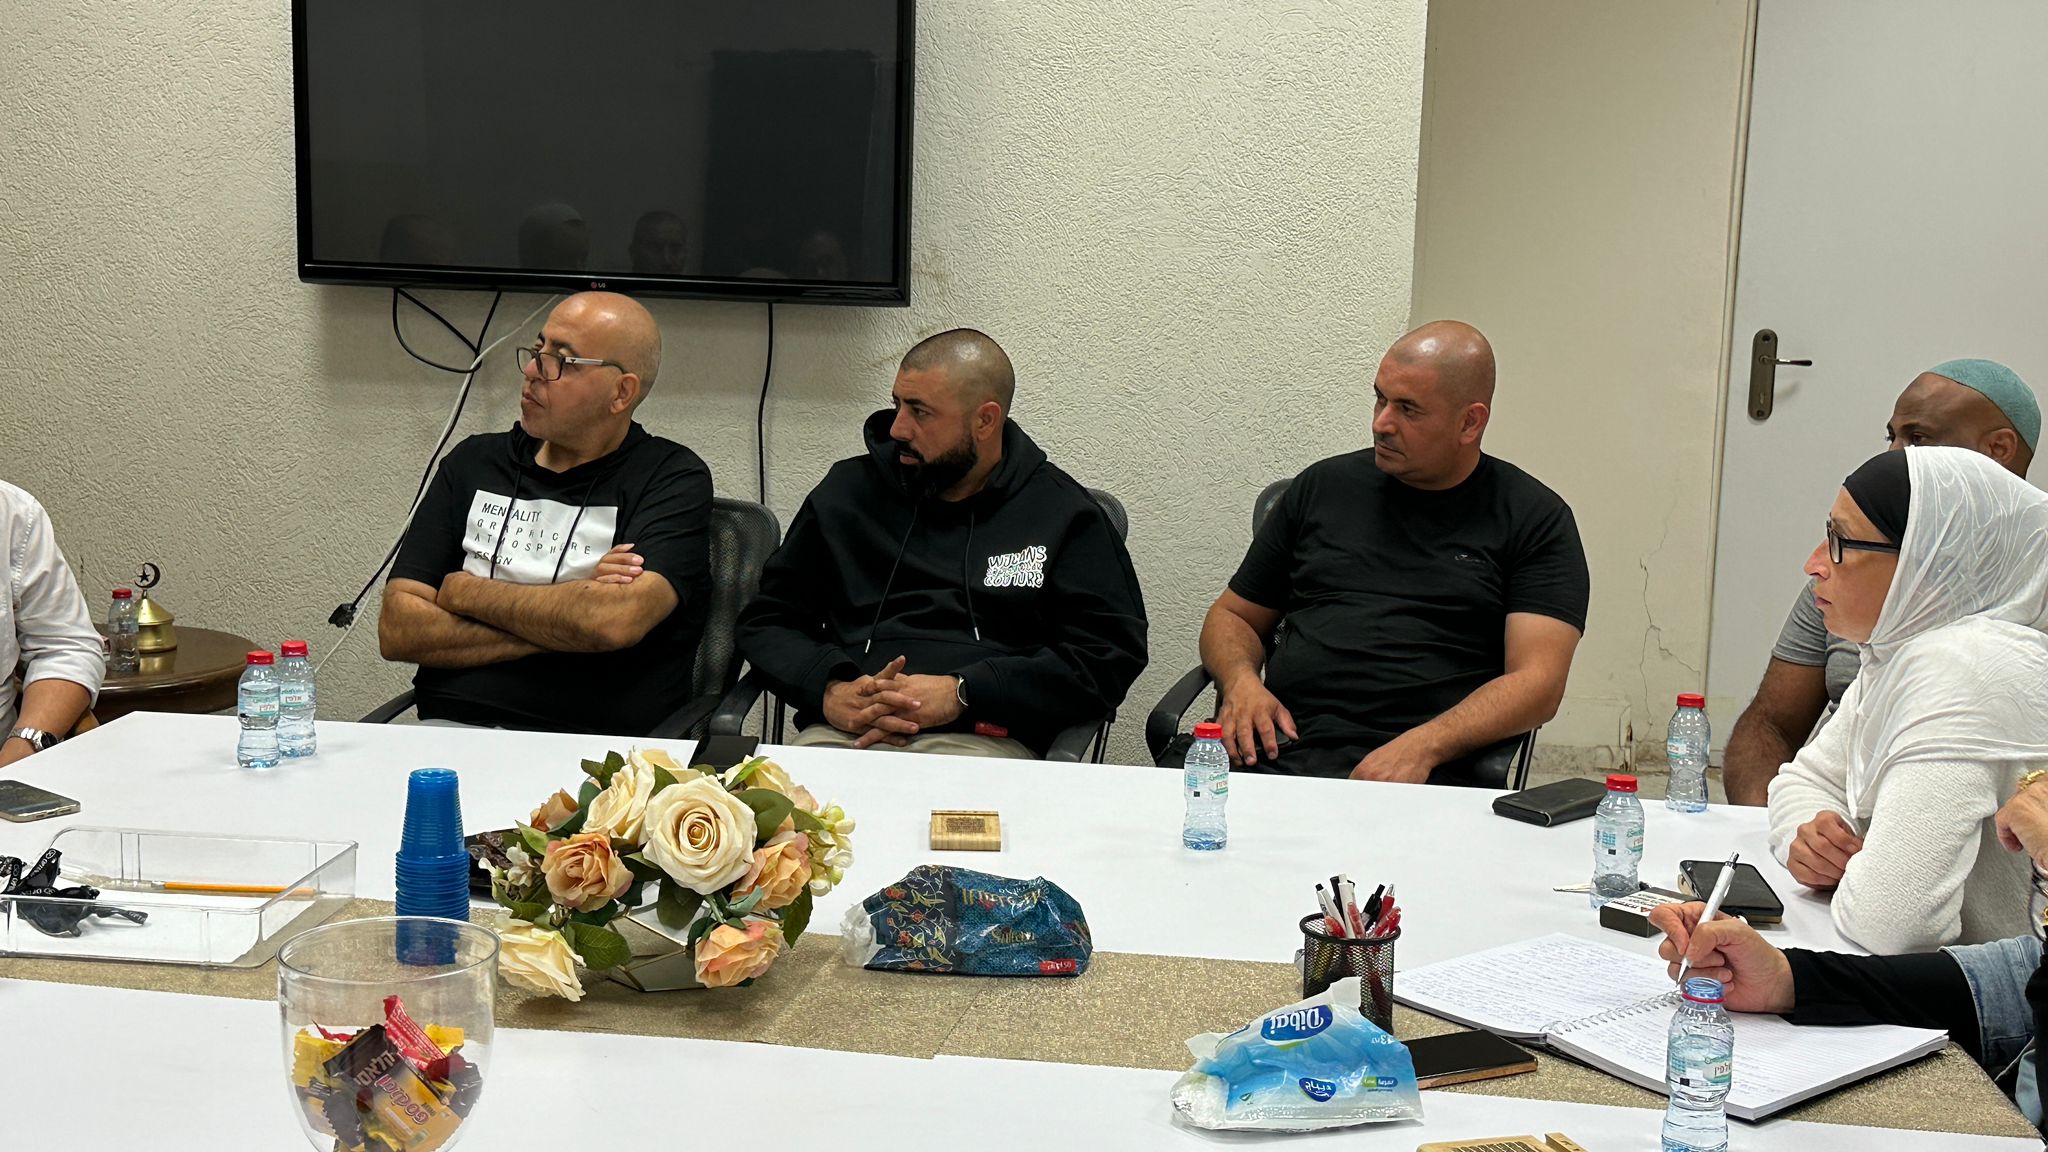 الهيئة الإسلامية يافا:إنطلاق أولى جلسات تشكيل لجنة أباء محليّة جامعة بيافا 